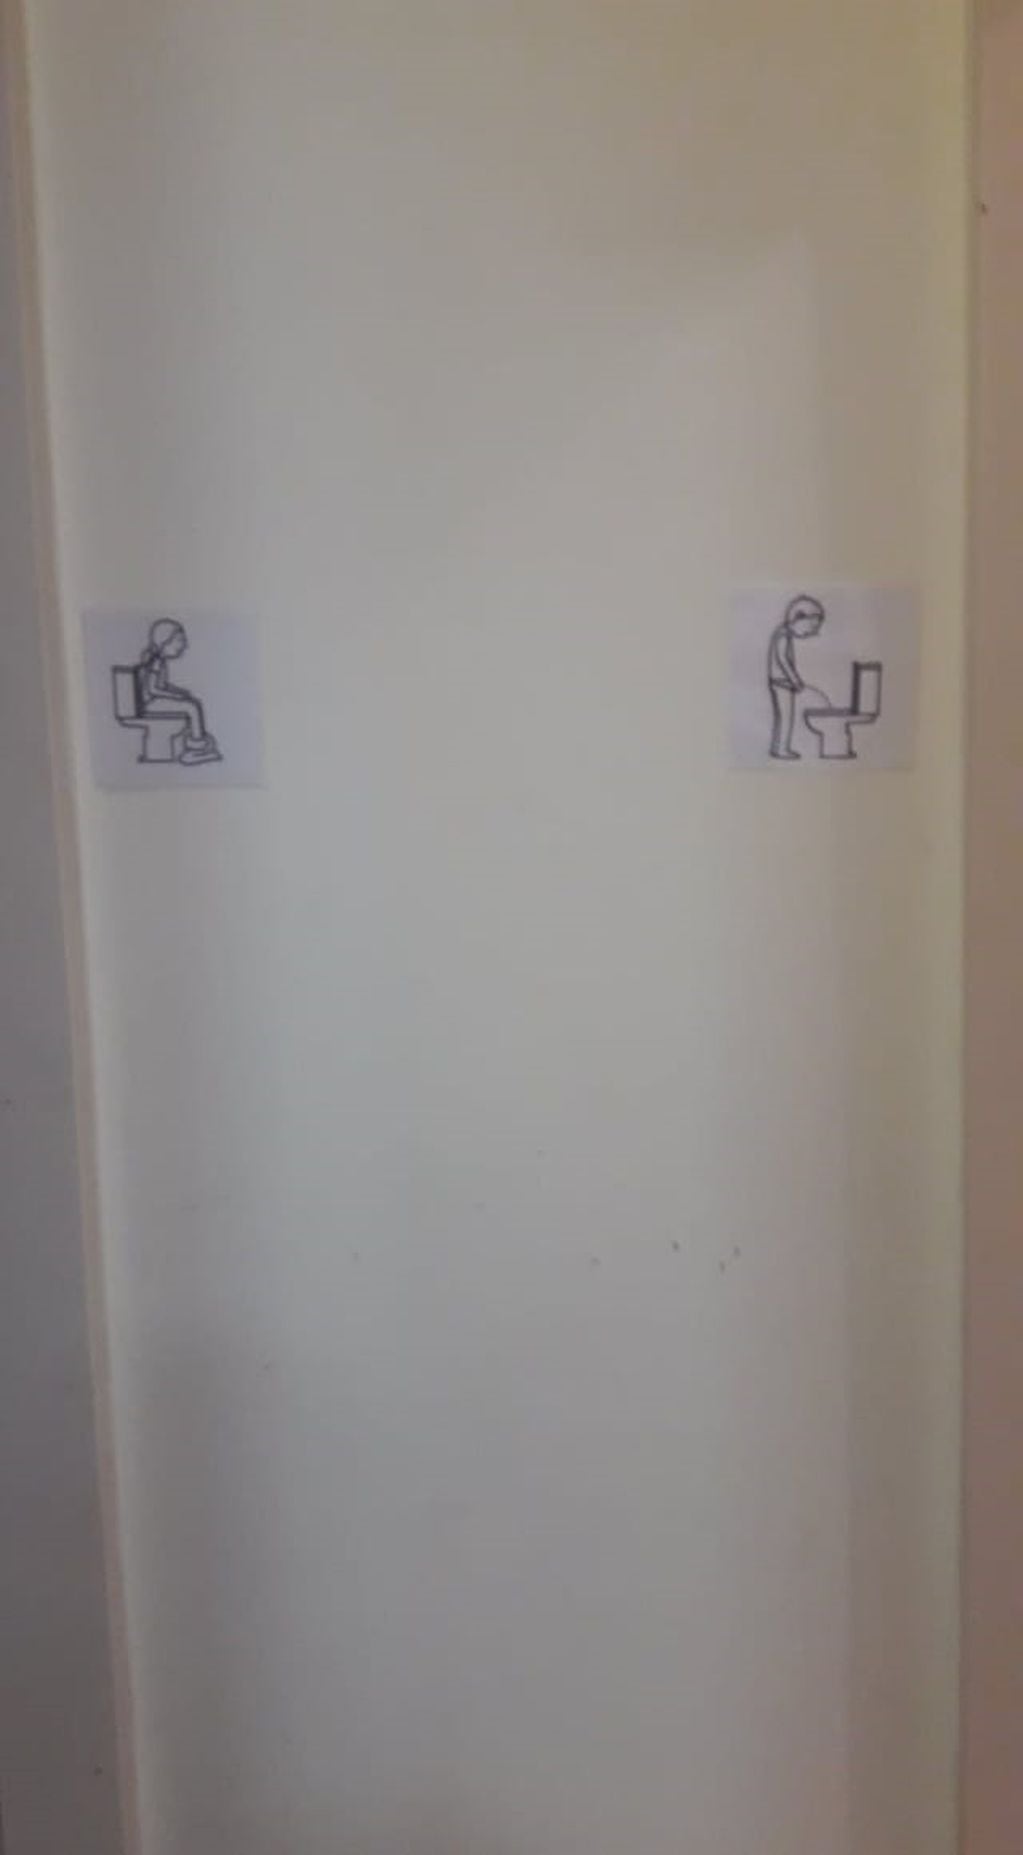 Pictogramas ubicados en la entrada de los baños, es otra acción de la que implementaron en el local.